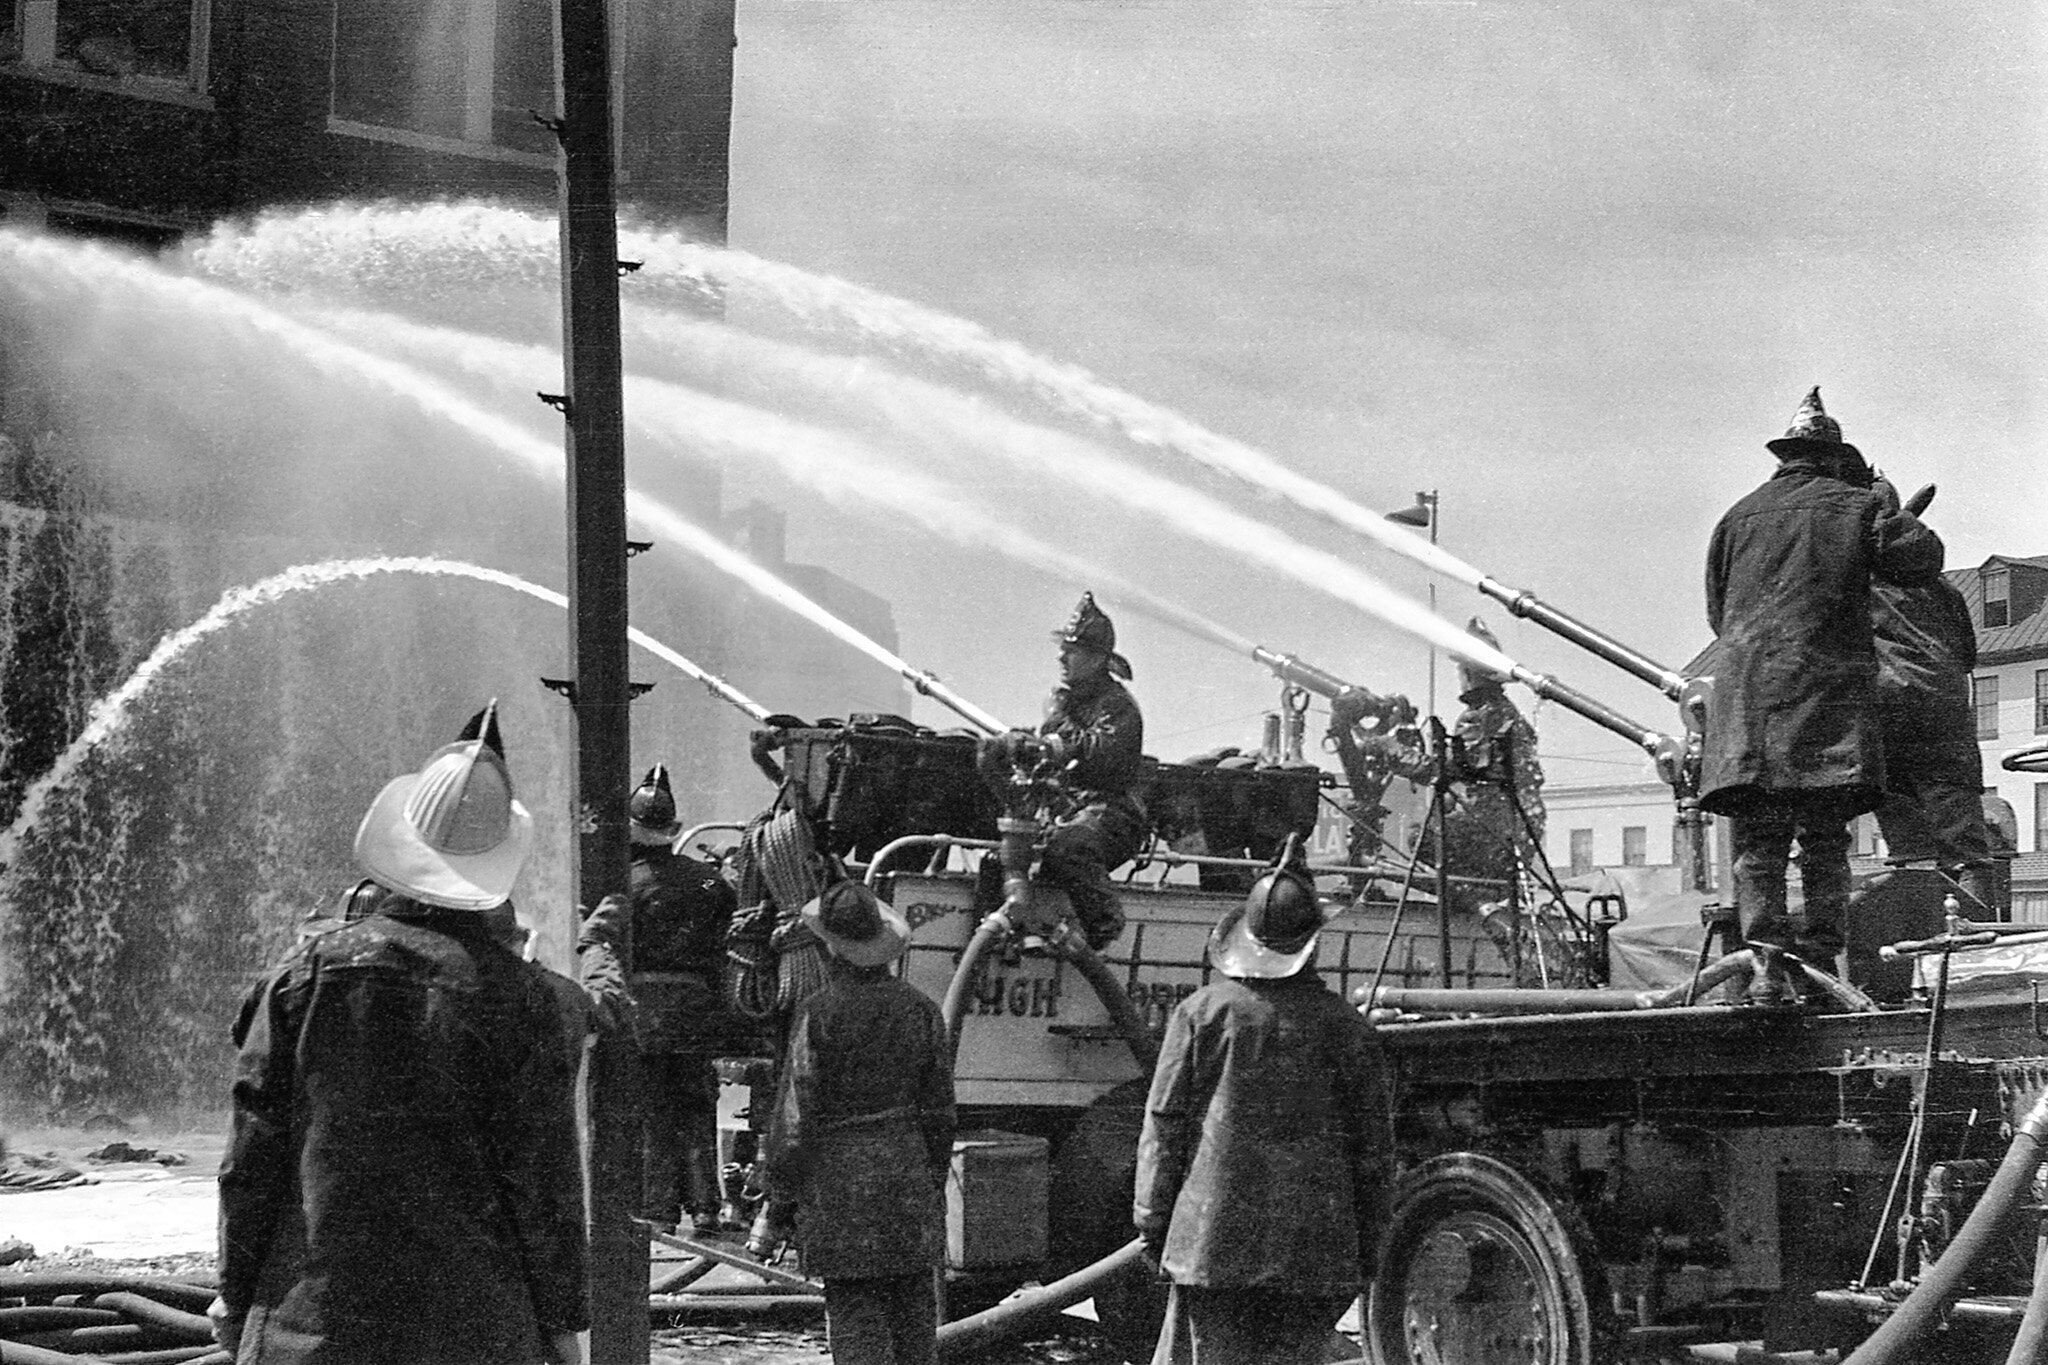 Obrecht Warehouse Fire, 1940